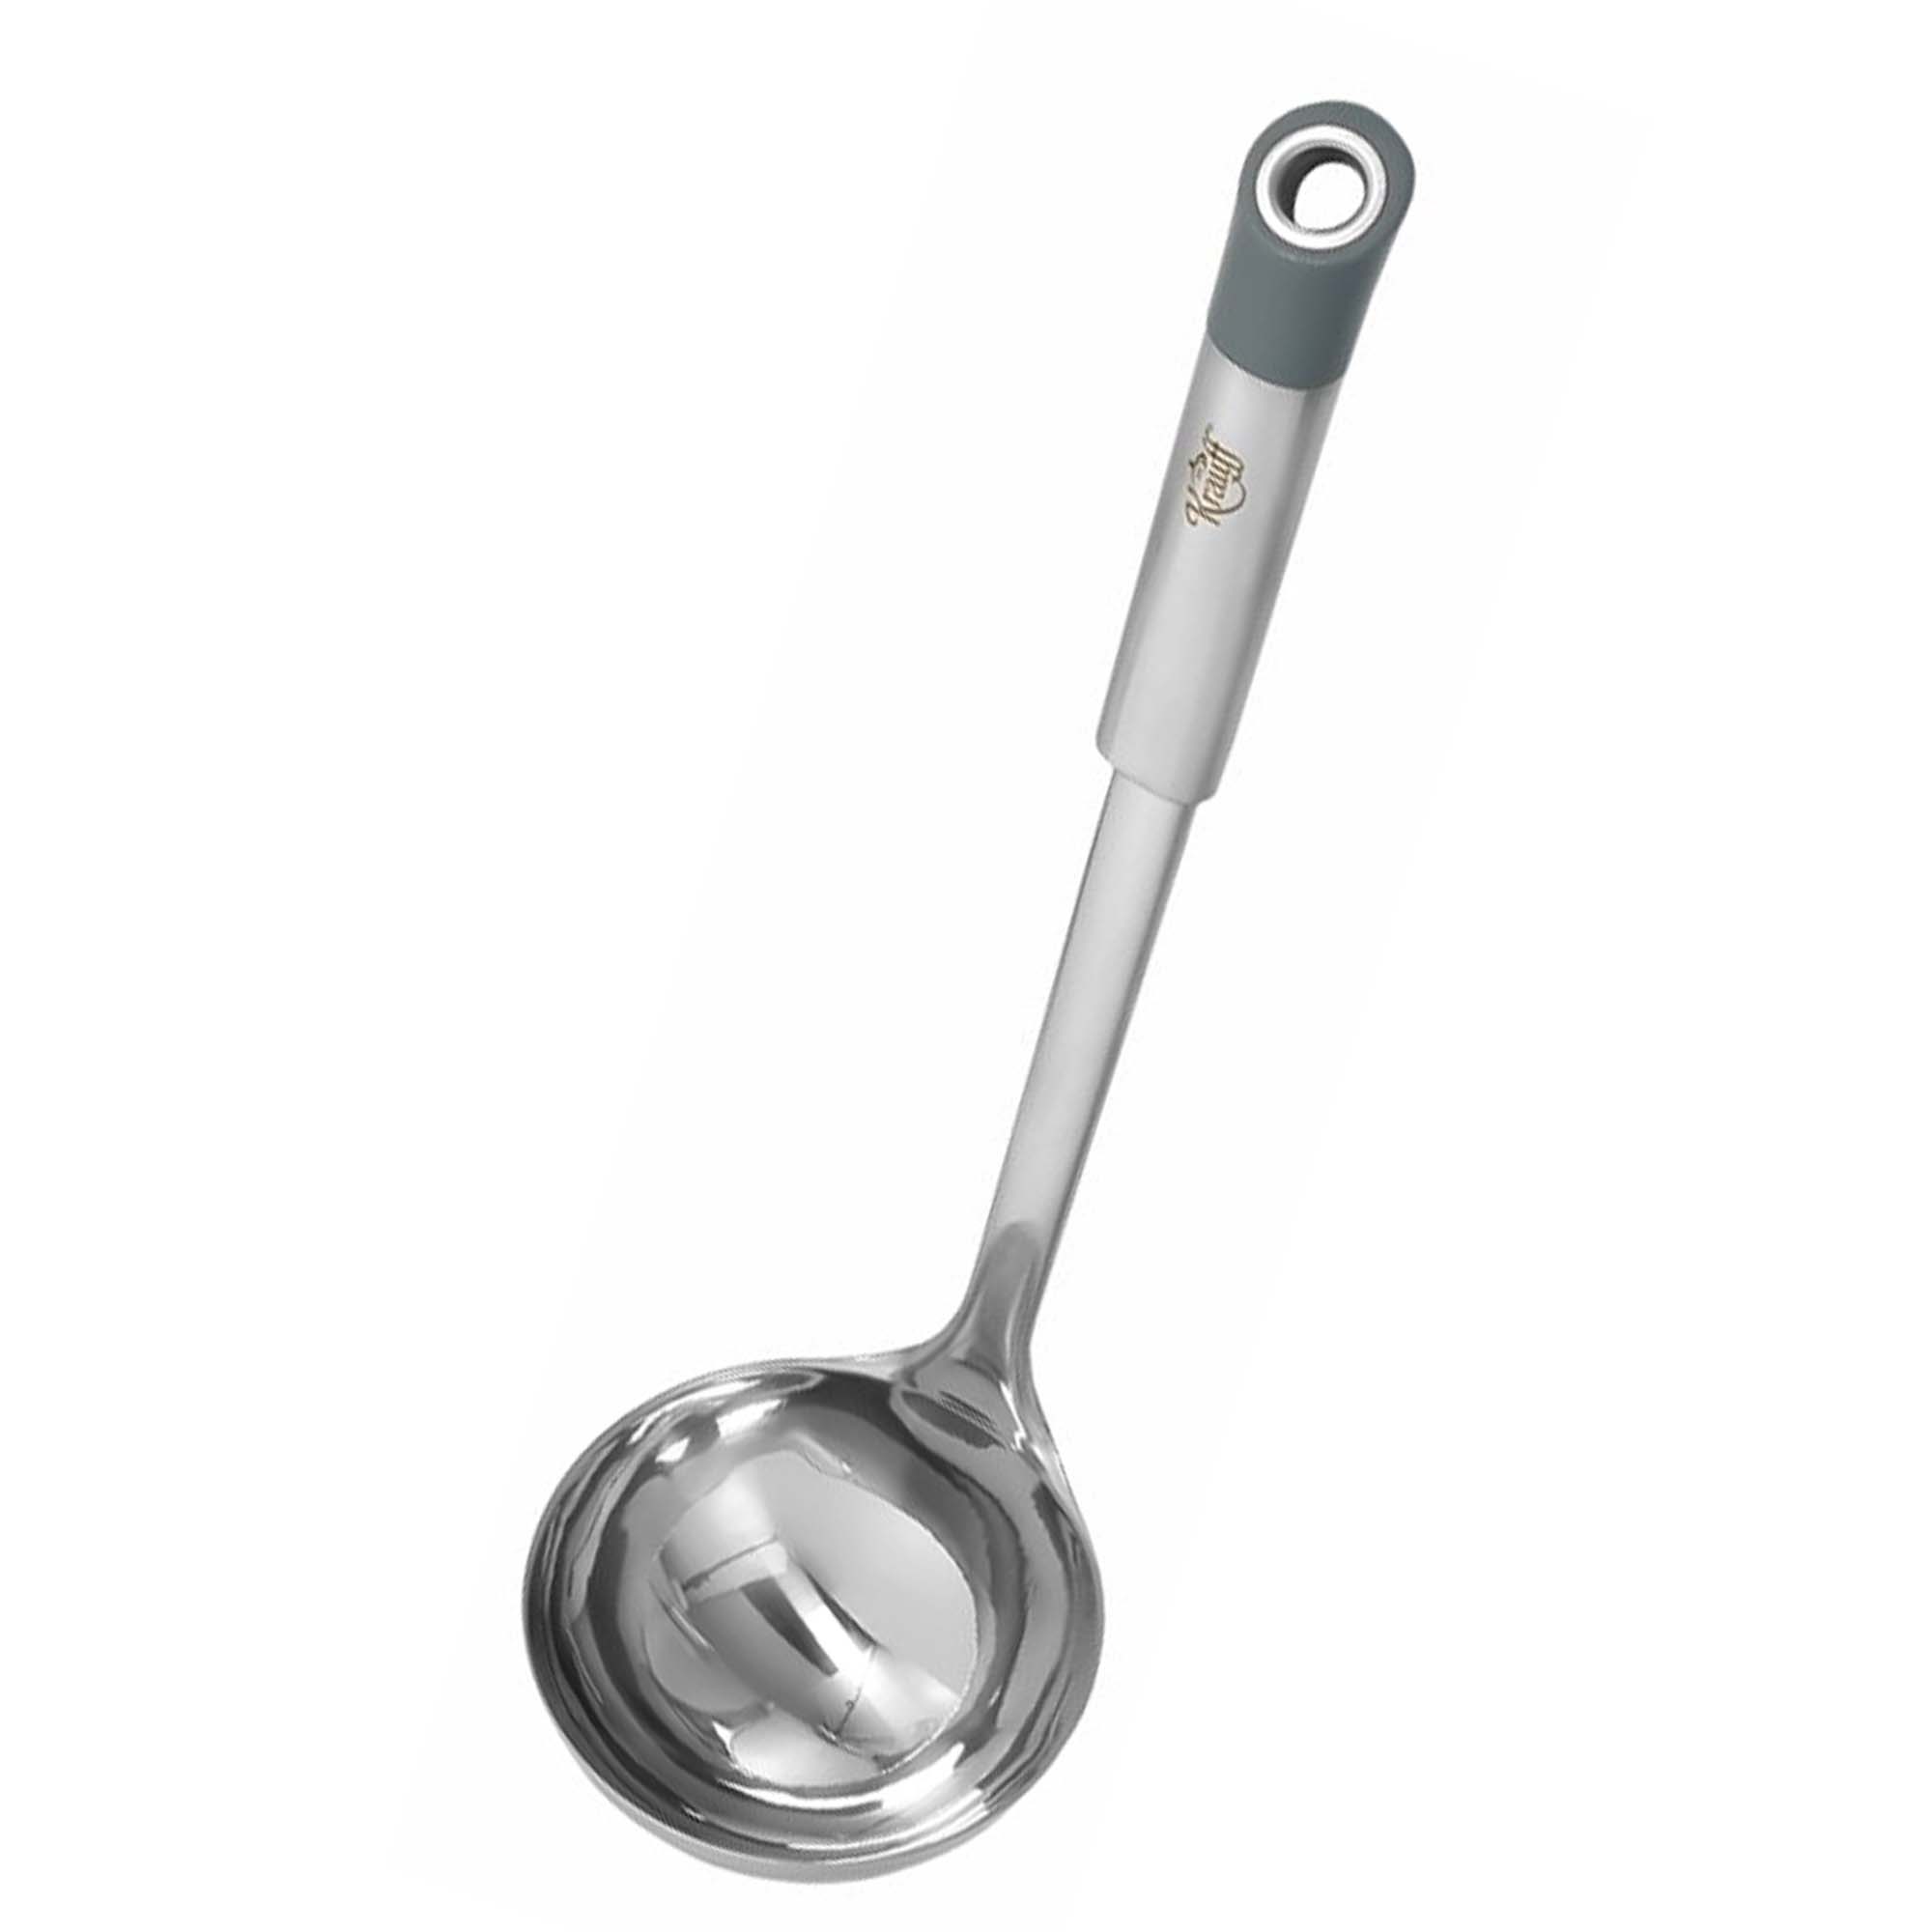 Gericht kitchen tool set